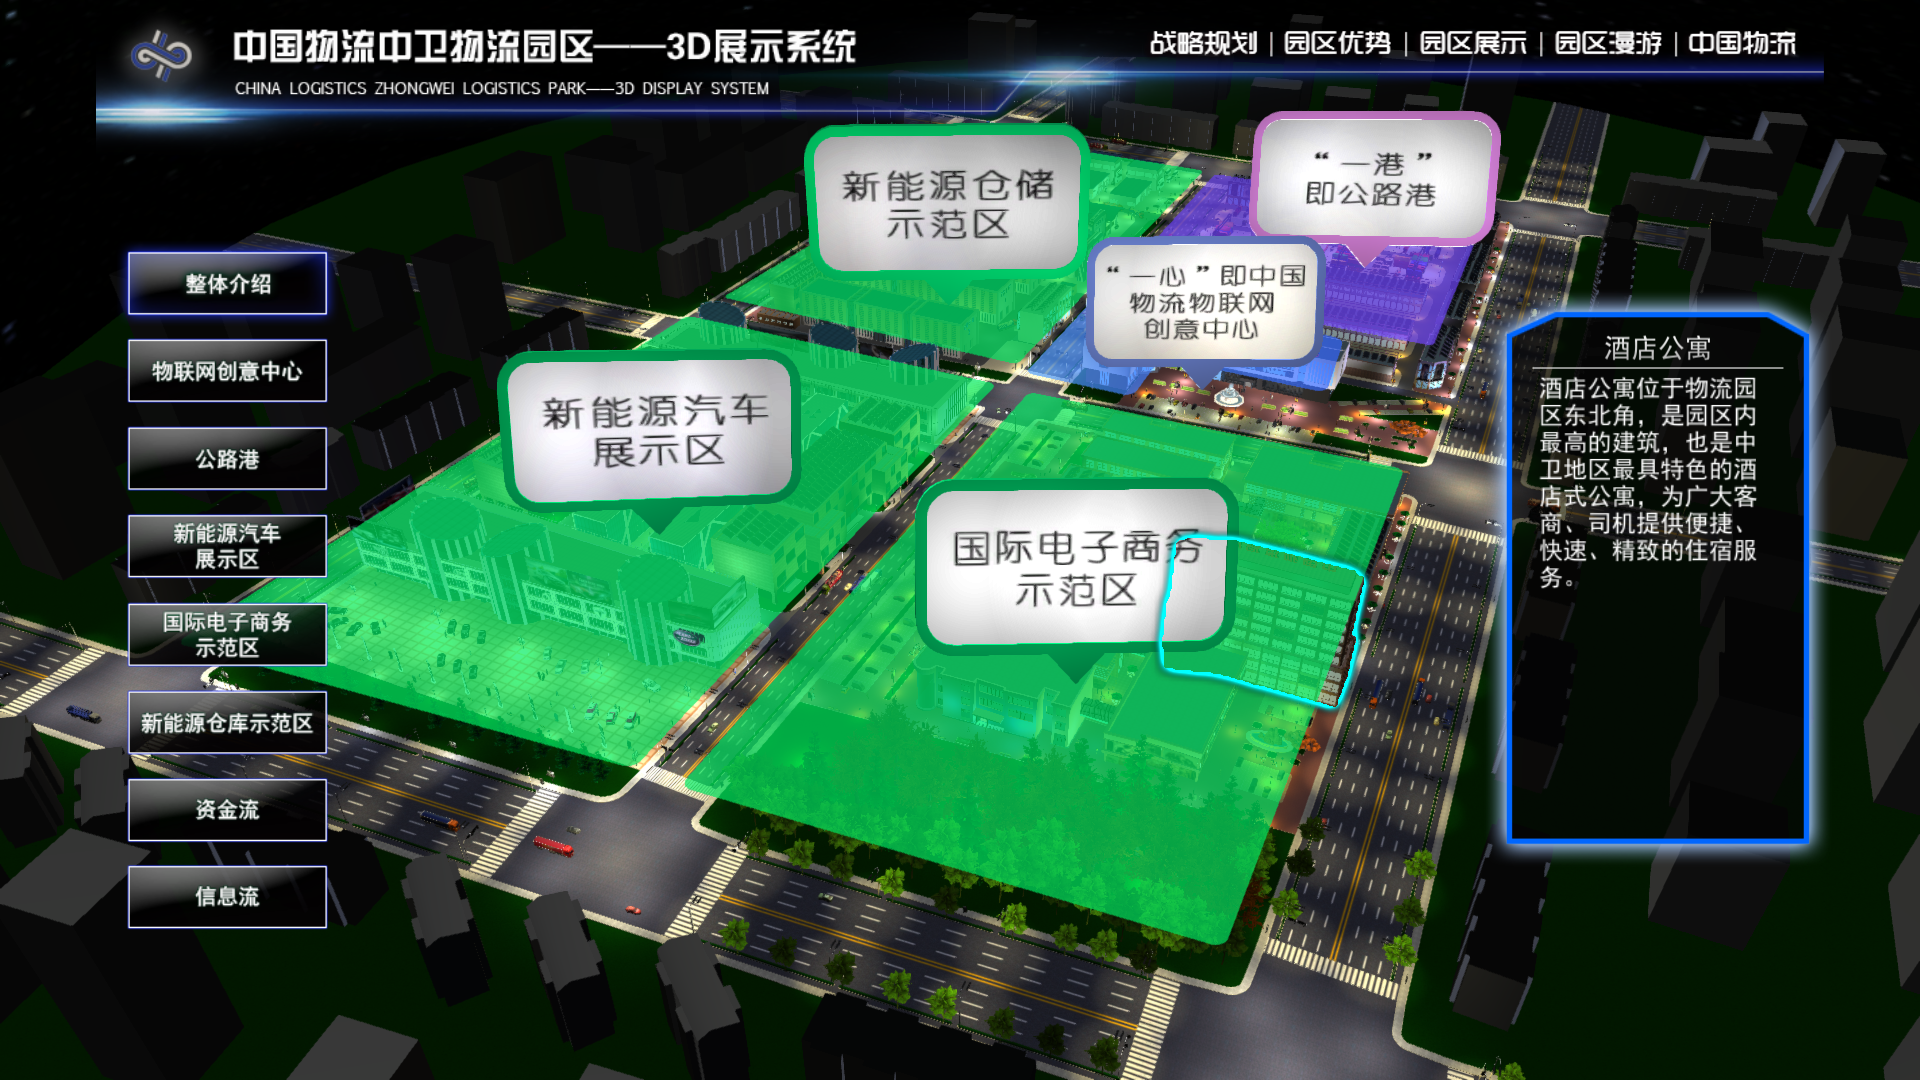 中国物流中卫物流园区3D展示系统